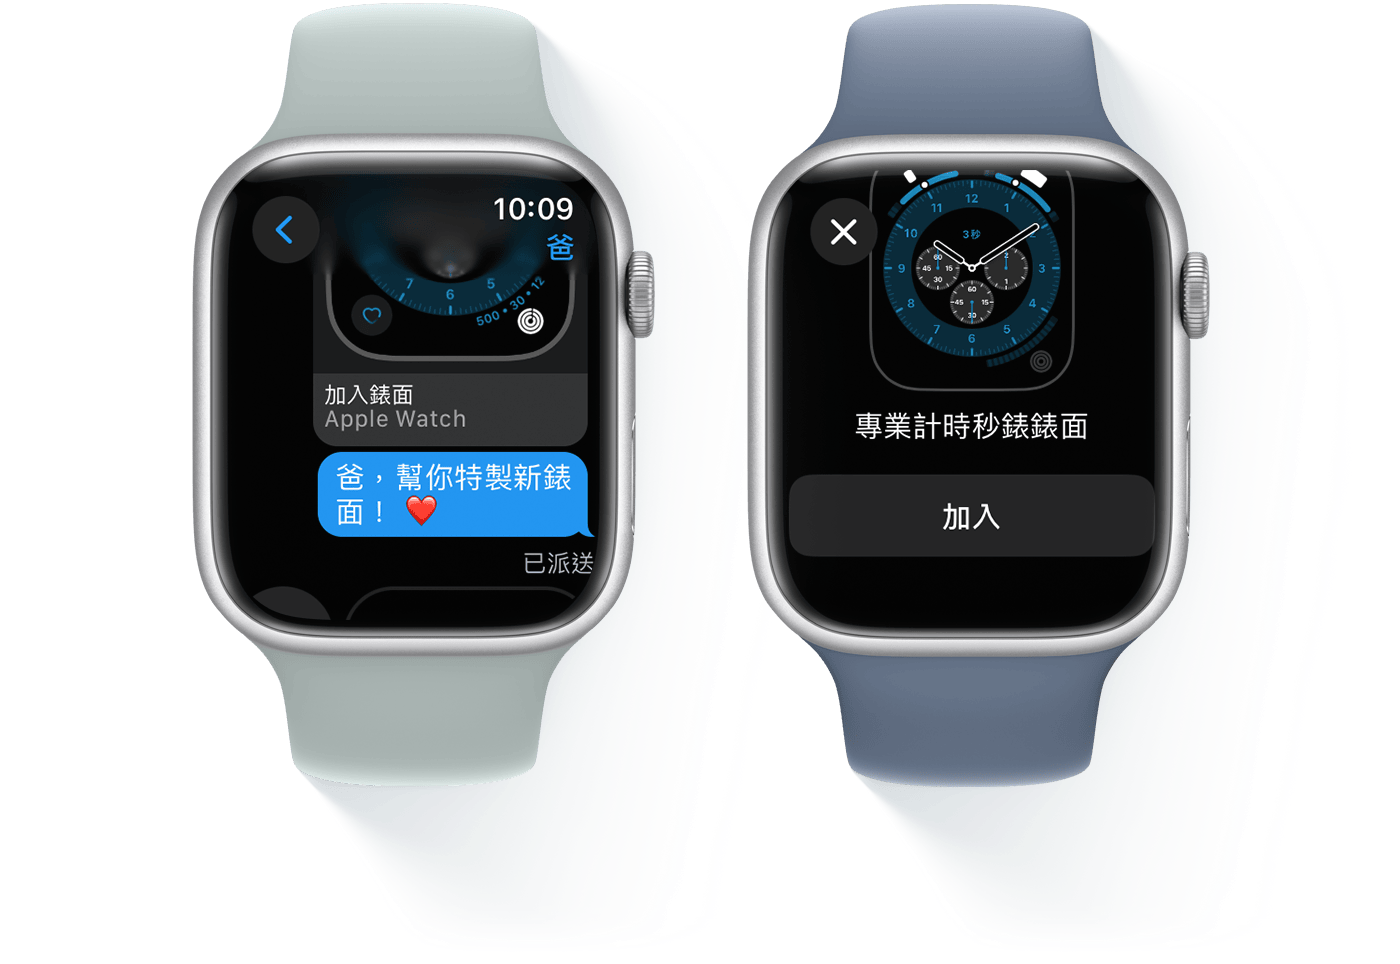 圖中有兩隻 Apple Watch，一隻顯示短訊對話，另一隻則顯示專業計時秒錶錶面